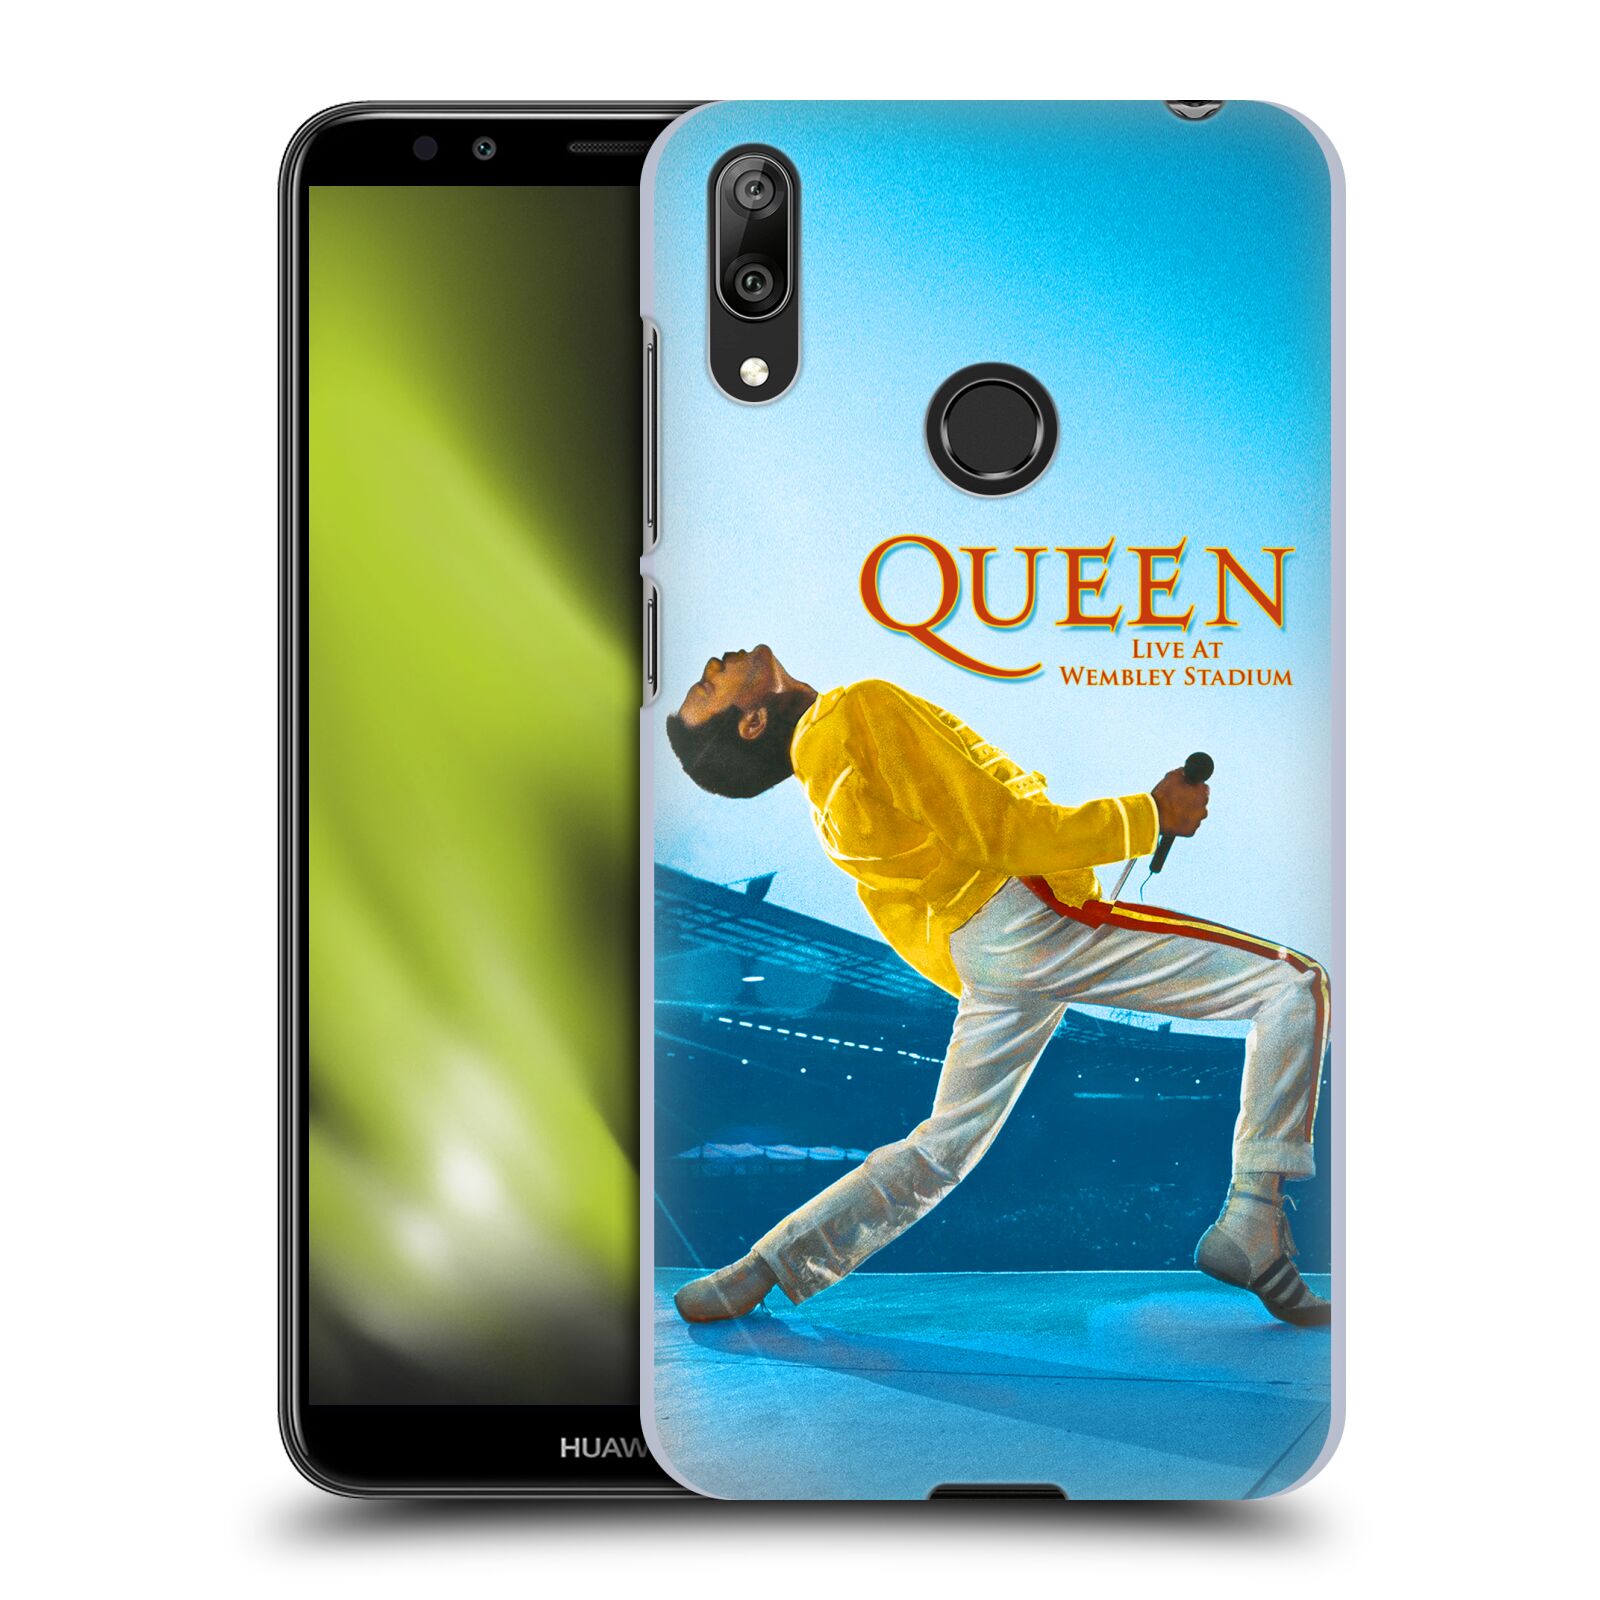 Pouzdro na mobil Huawei Y7 2019 - Head Case - zpěvák Queen skupina Freddie Mercury